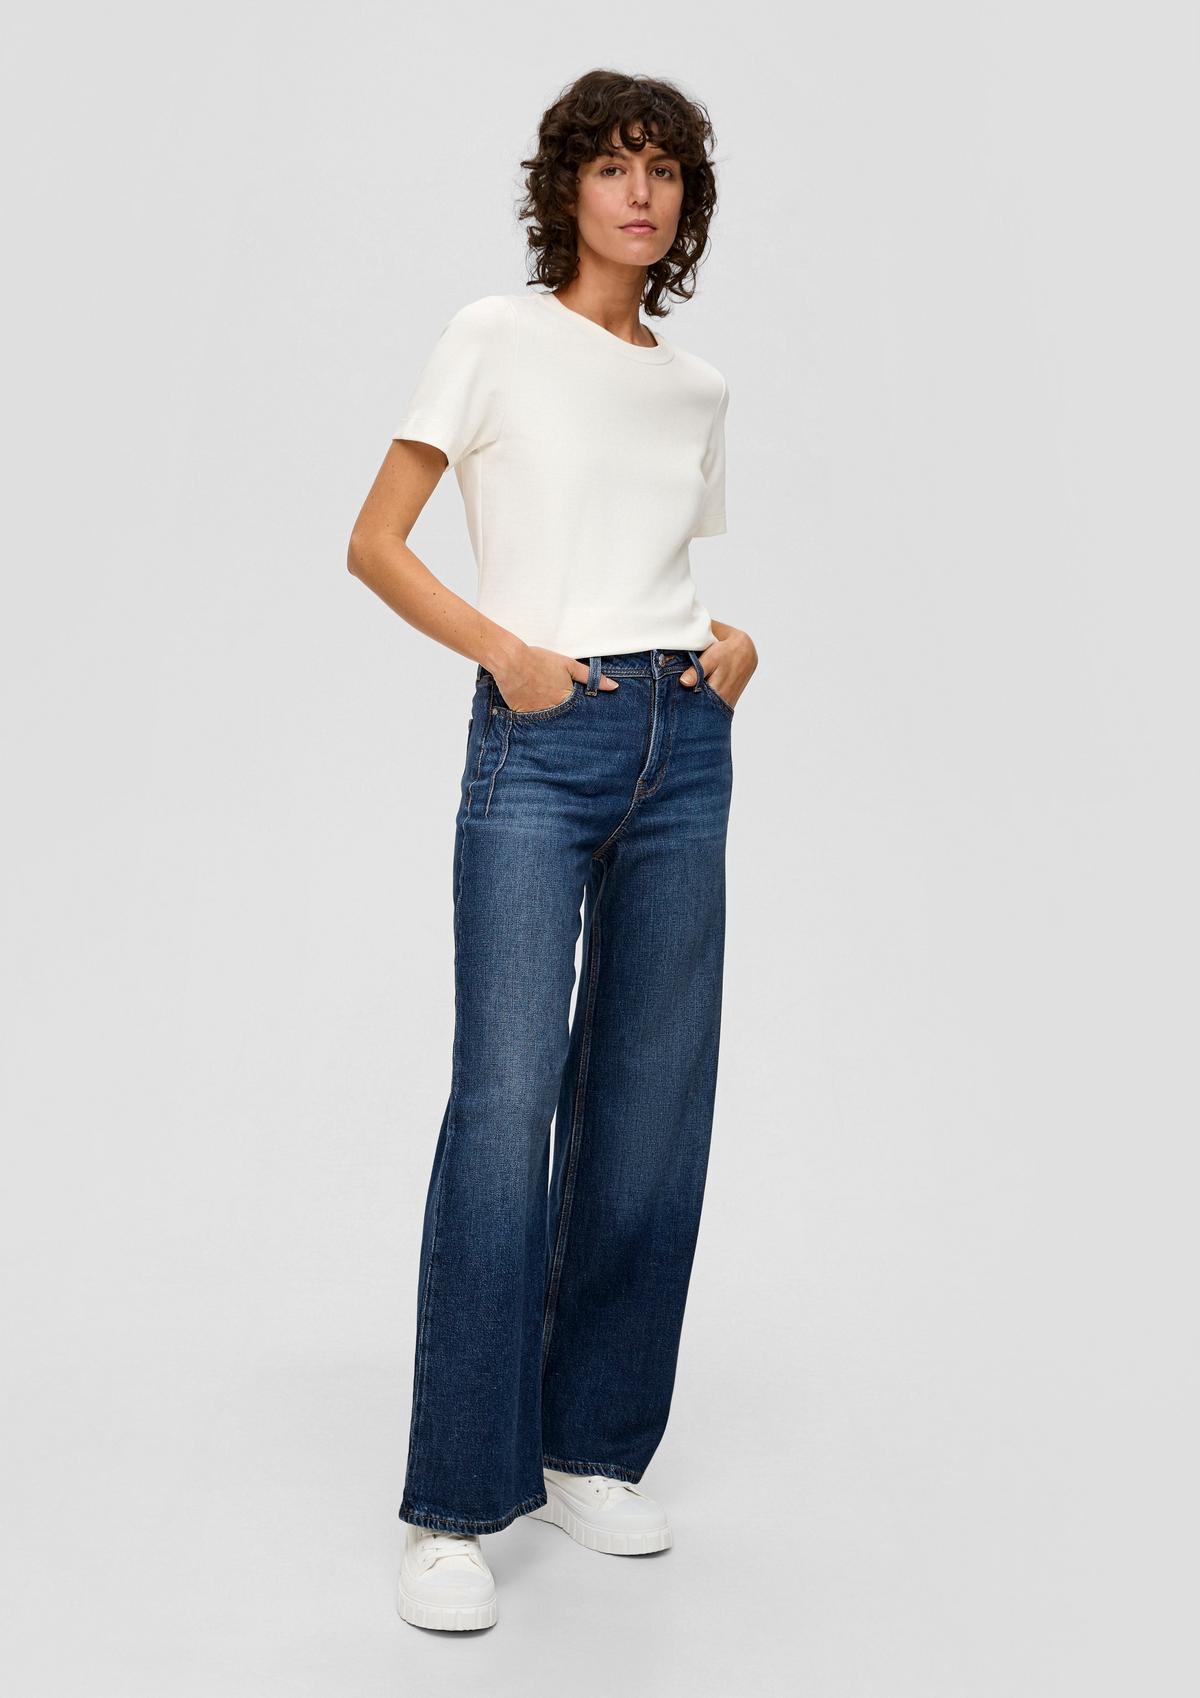 Wide leg Jeans für Damen bequem online kaufen bei